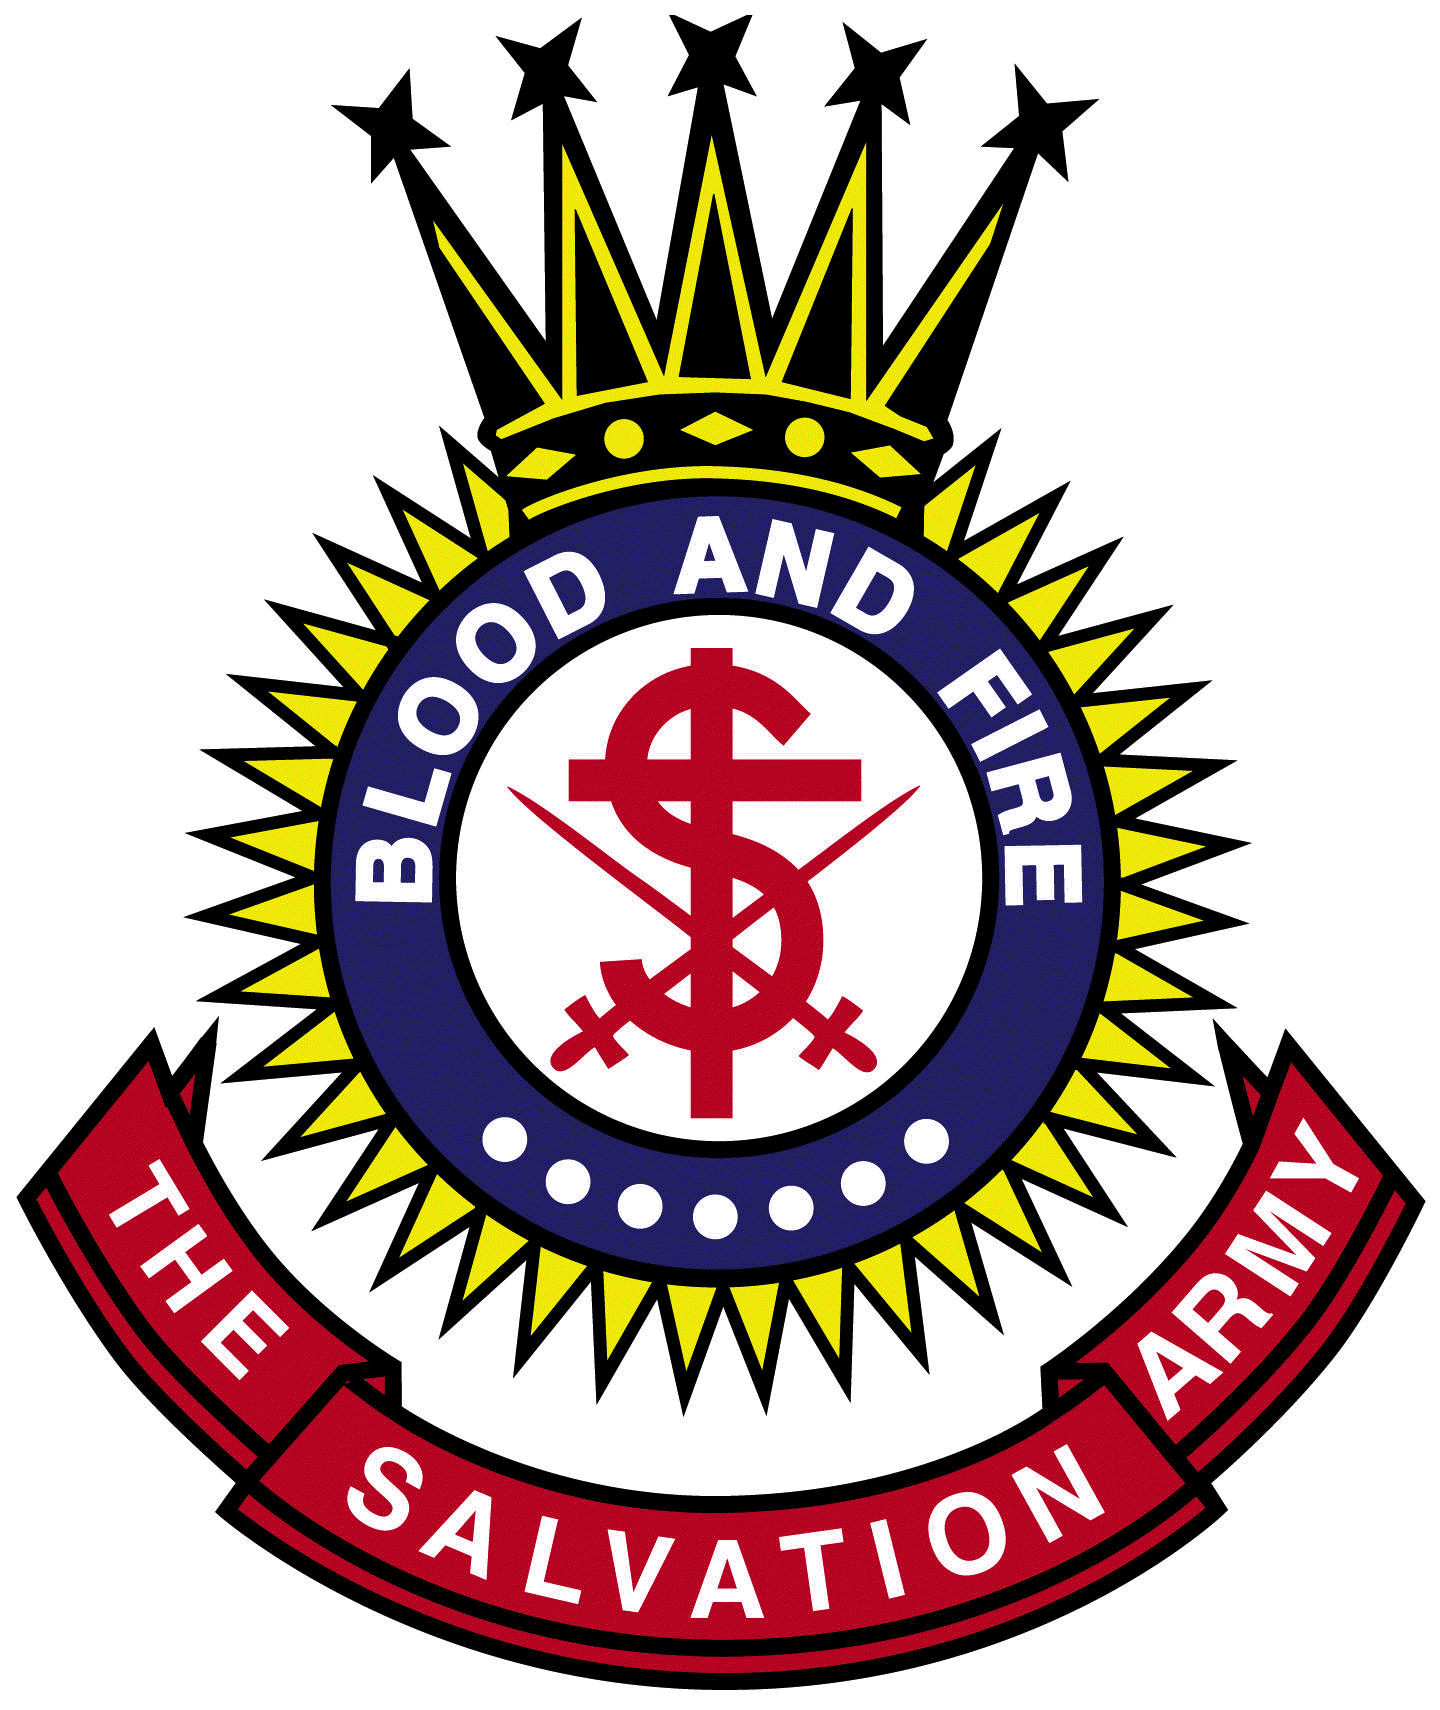 Salvation Army Crest